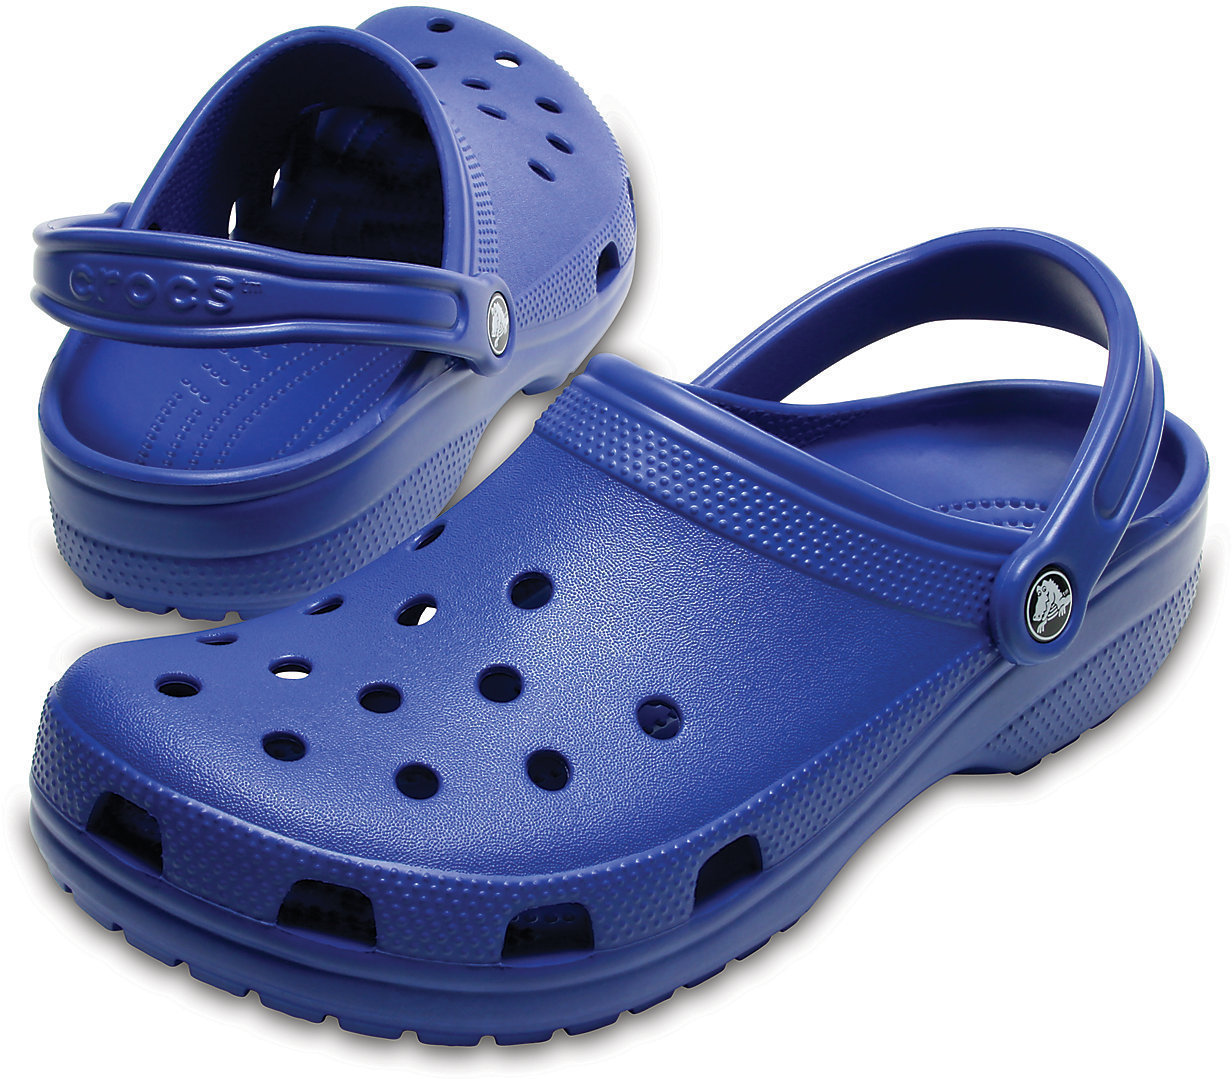 Παπούτσι Unisex Crocs Classic Clog Blue Jean 36-37